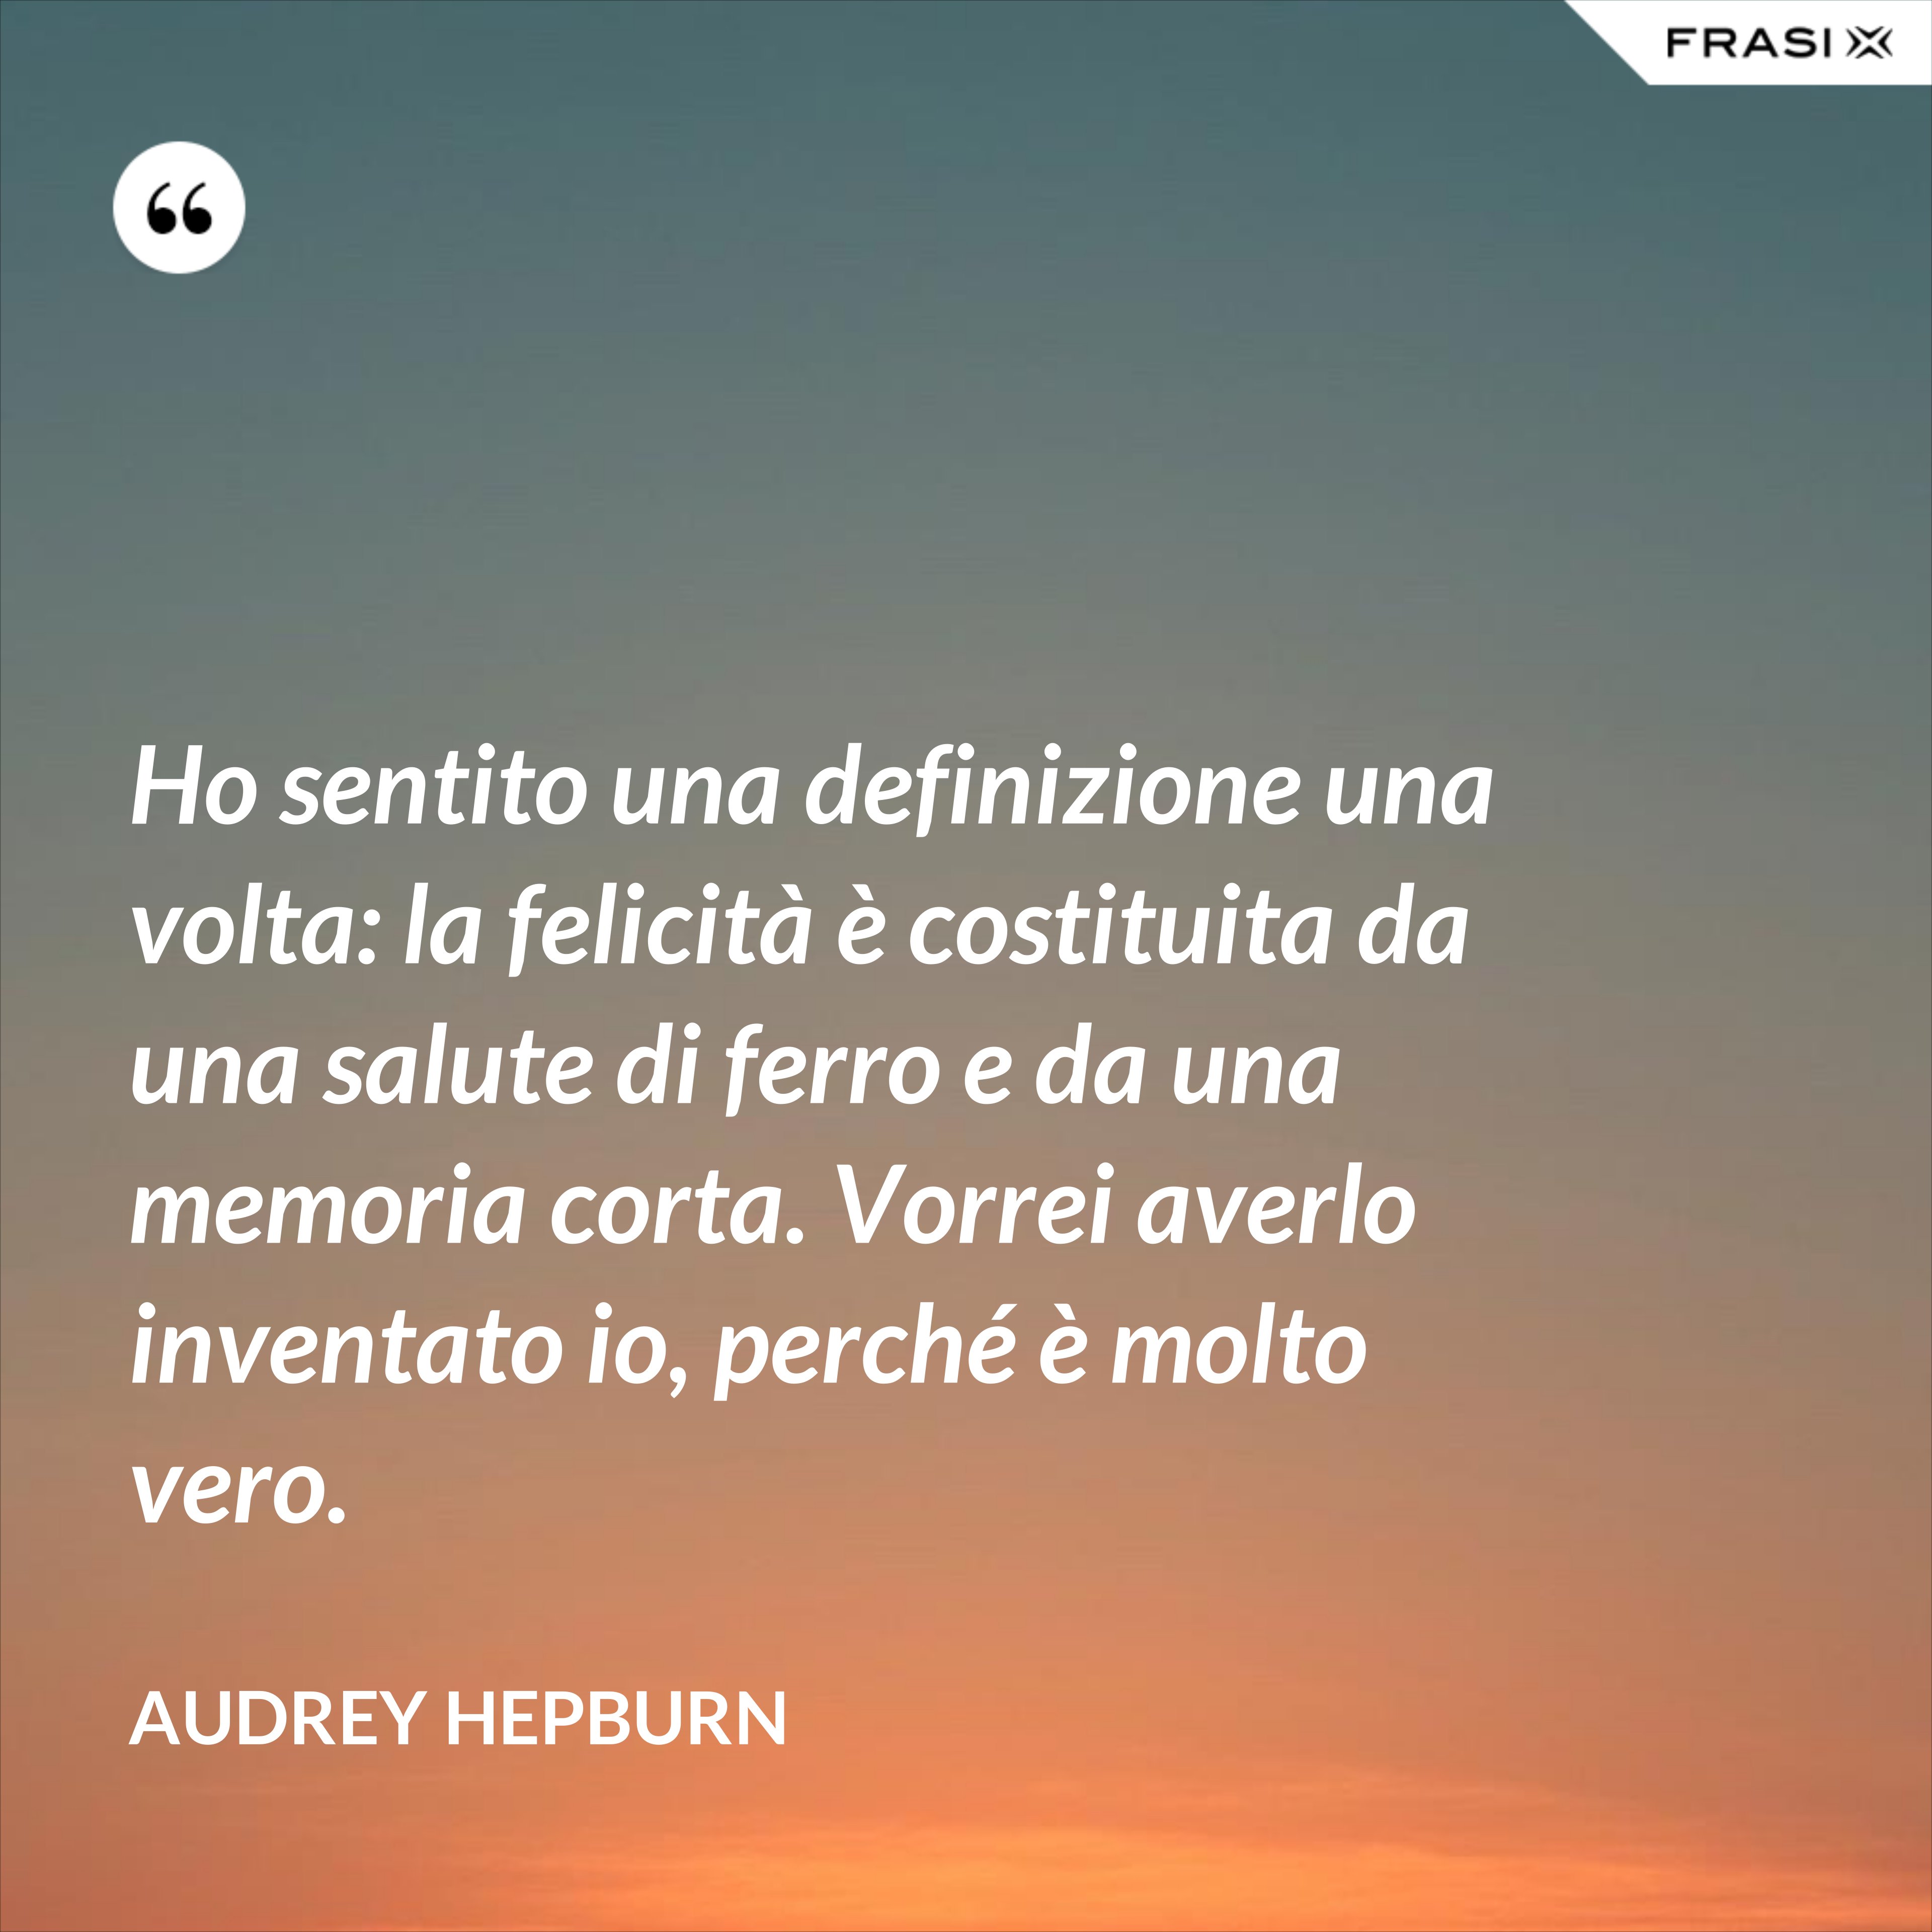 Ho sentito una definizione una volta: la felicità è costituita da una salute di ferro e da una memoria corta. Vorrei averlo inventato io, perché è molto vero. - Audrey Hepburn